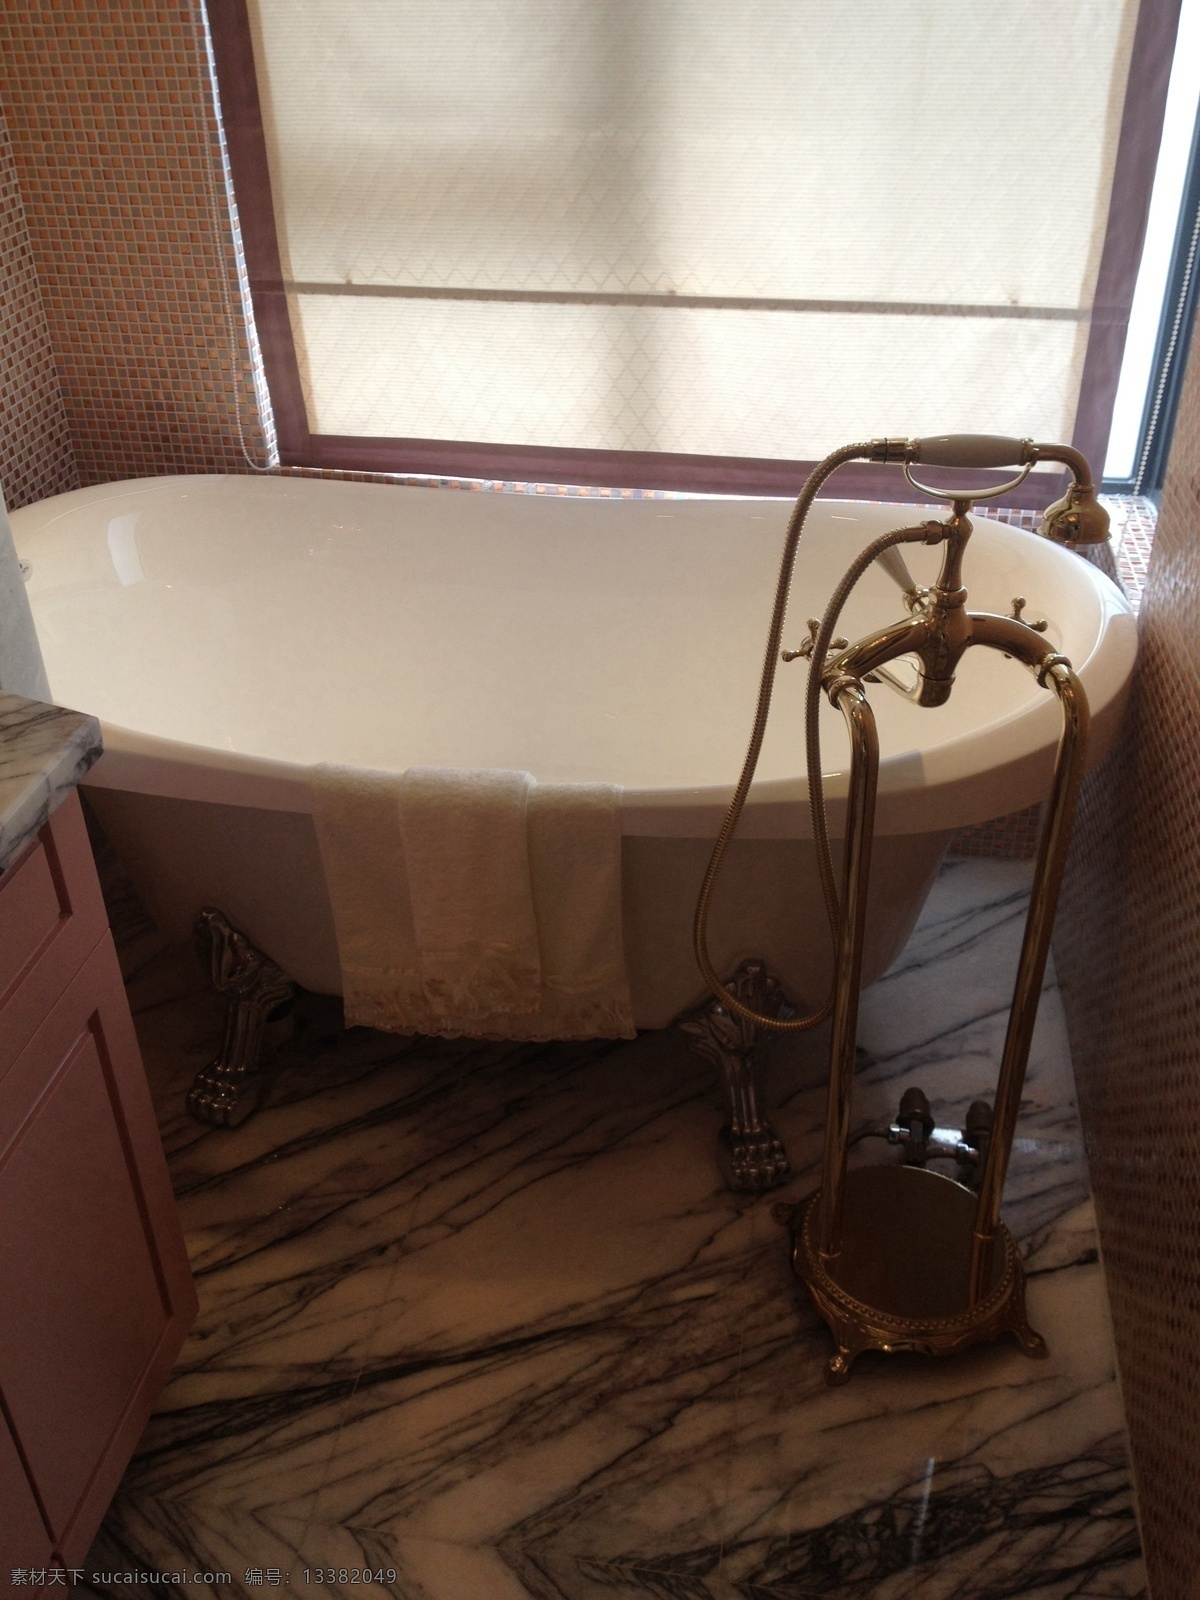 现代 浴室 浴缸 室内设计 家装 效果图 现代风 复古型 水龙头 白色浴缸 山峰地板 浴室柜 玻璃窗 家装效果图 实景效果